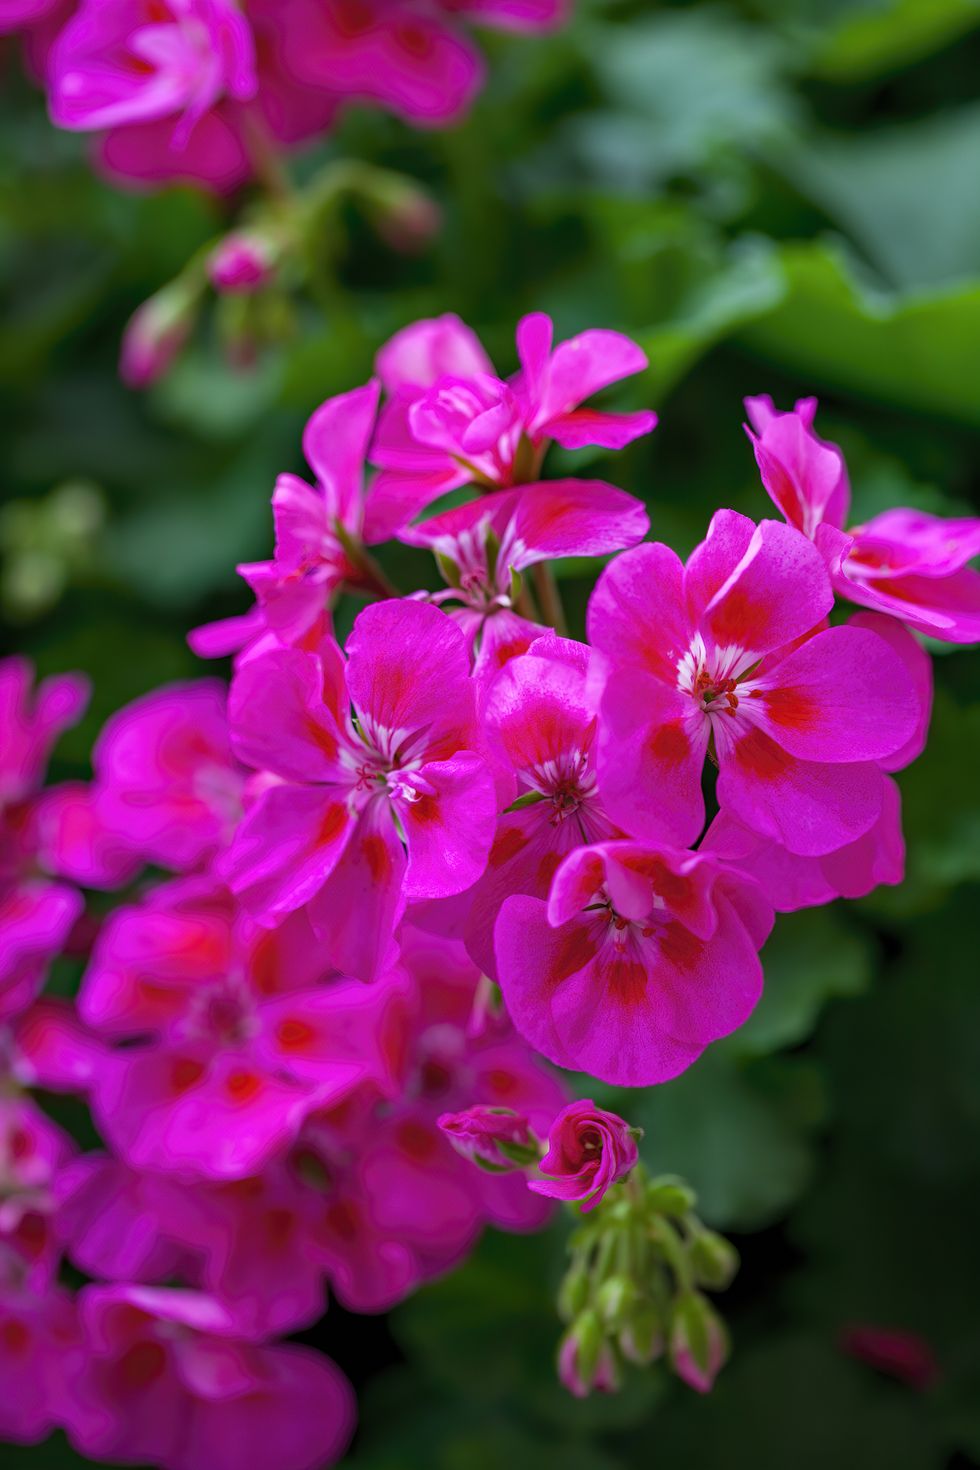 Geranium Flowers